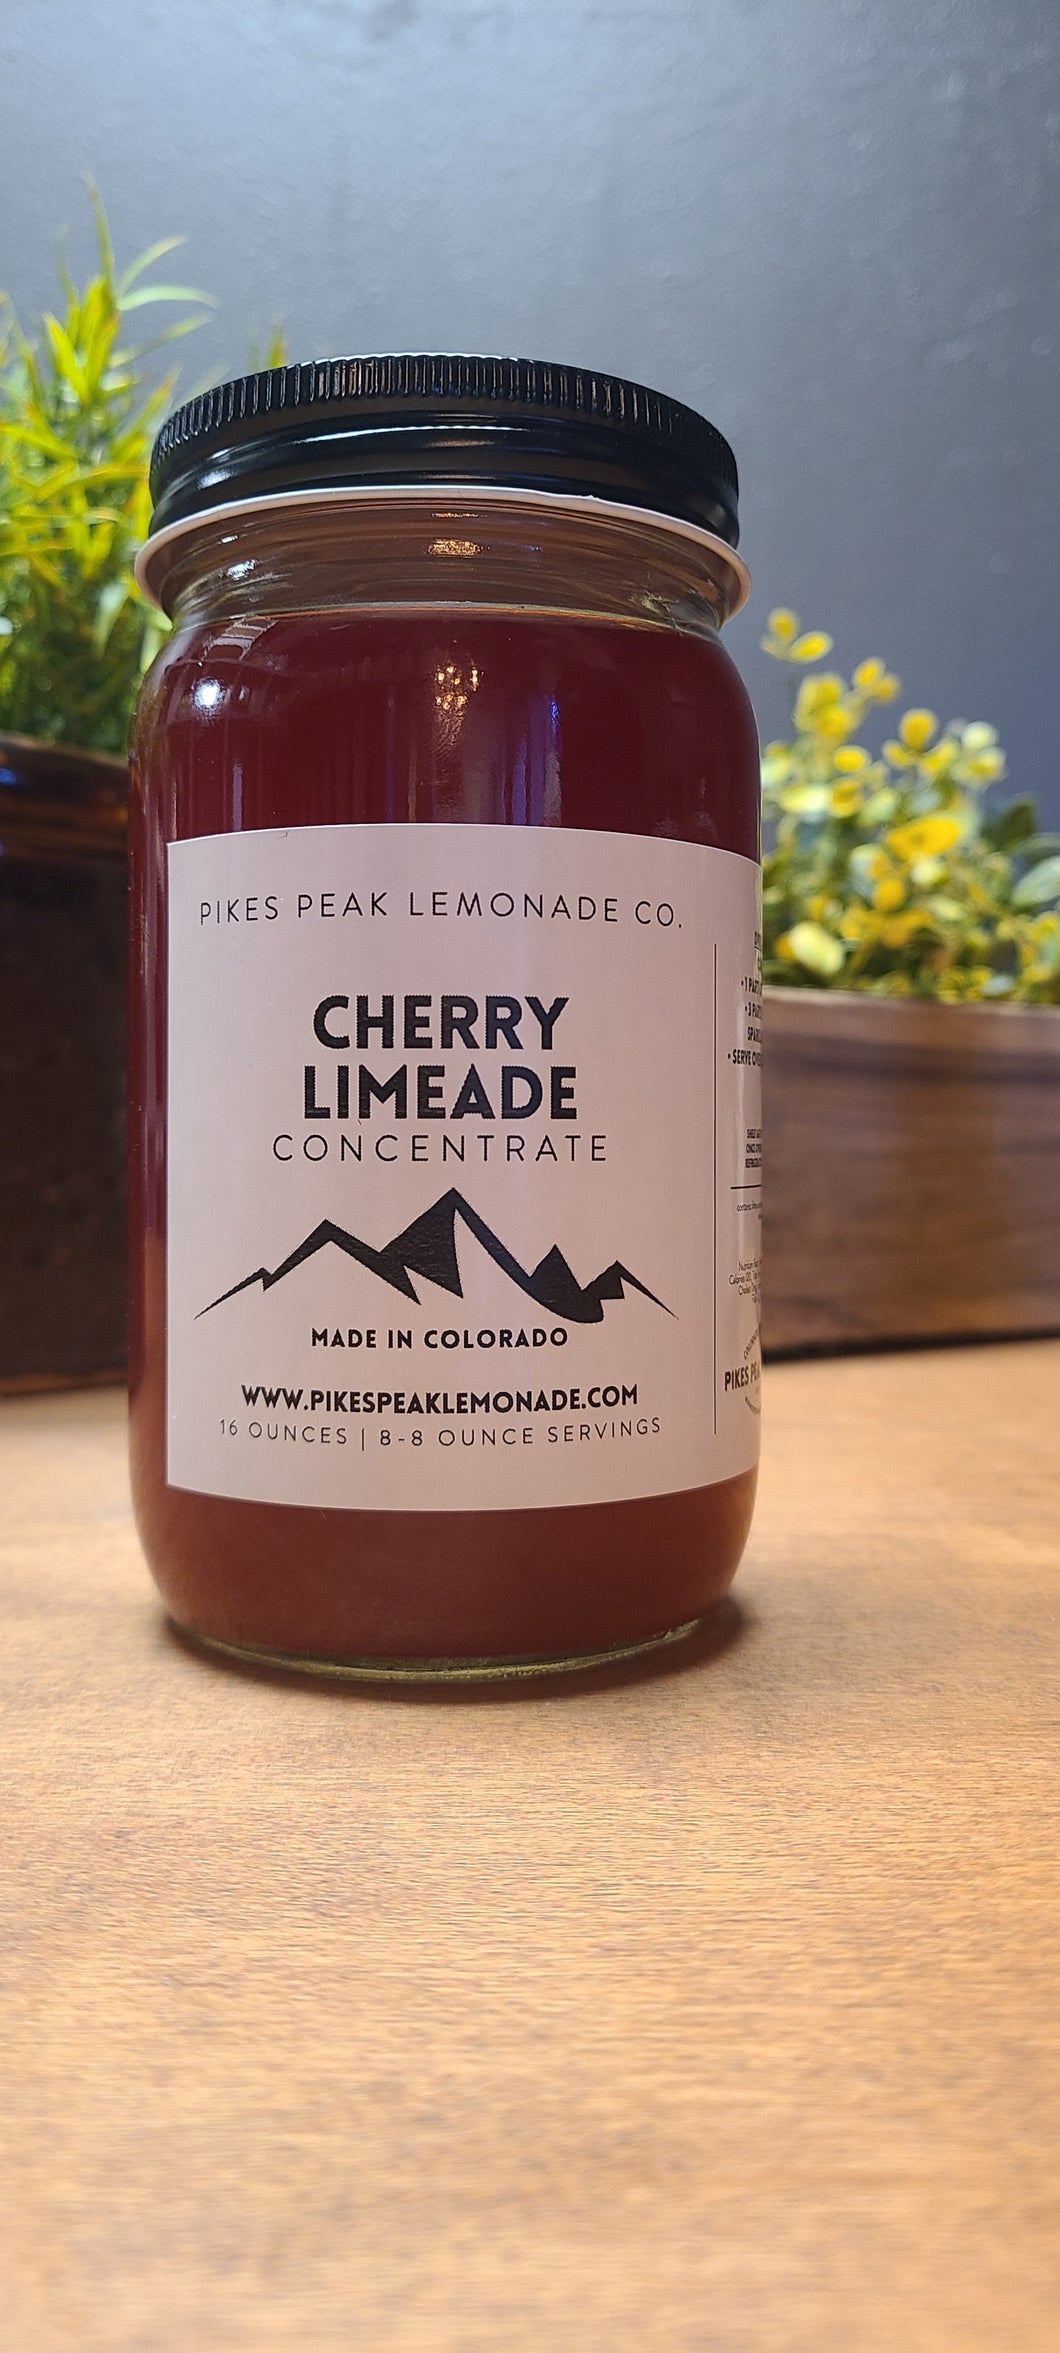 Pikes Peak Lemonade Concentrate